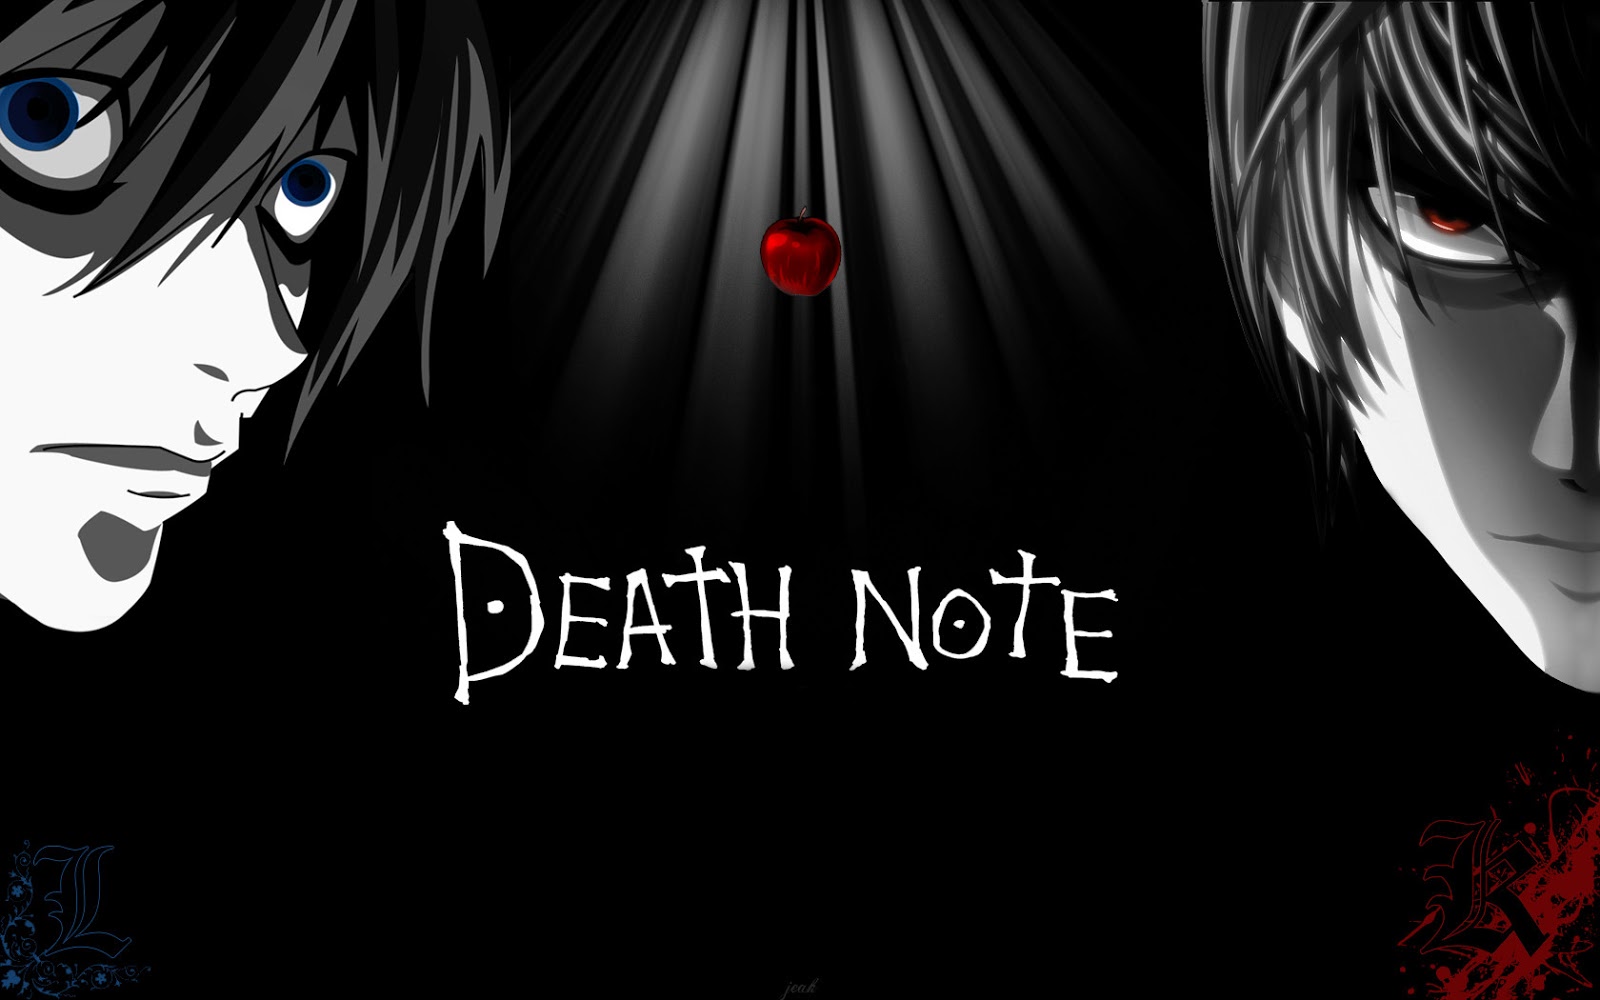 جميع حلقات انمي Death Note بلوري مترجم عدة روابط بدون حجب اون لاين و تحميل كامل بجودة عالية انمى دار